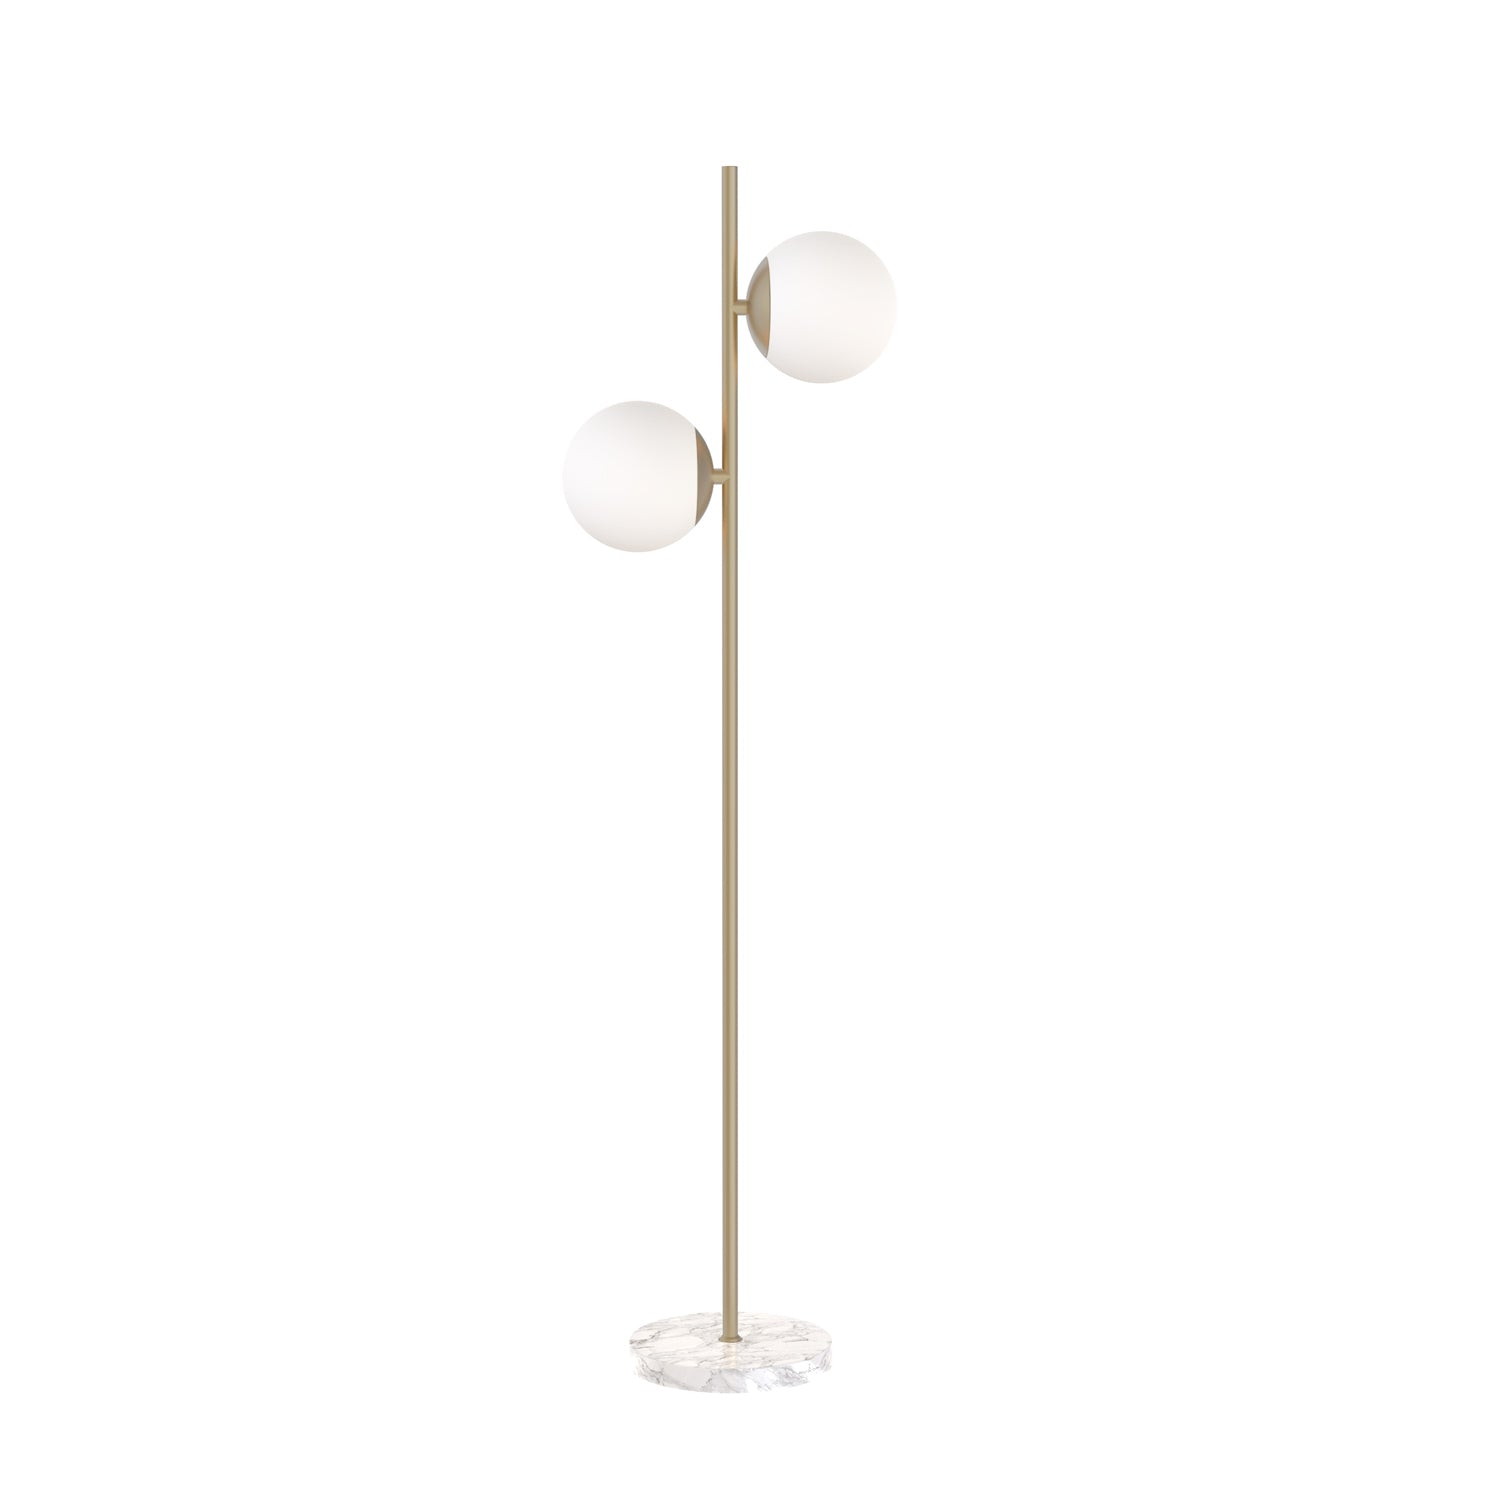 Castell 2 Globe LED Floor Lamp, Aged Brass